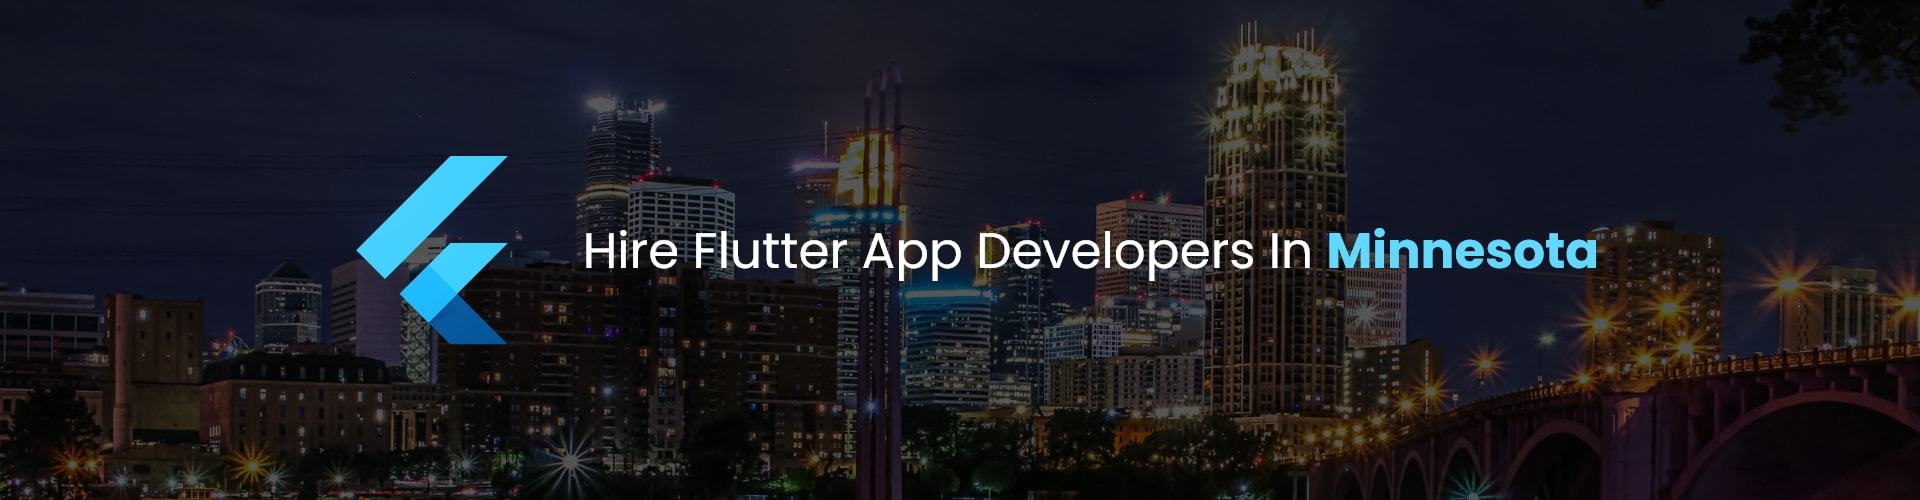 flutter app developers in minnesota